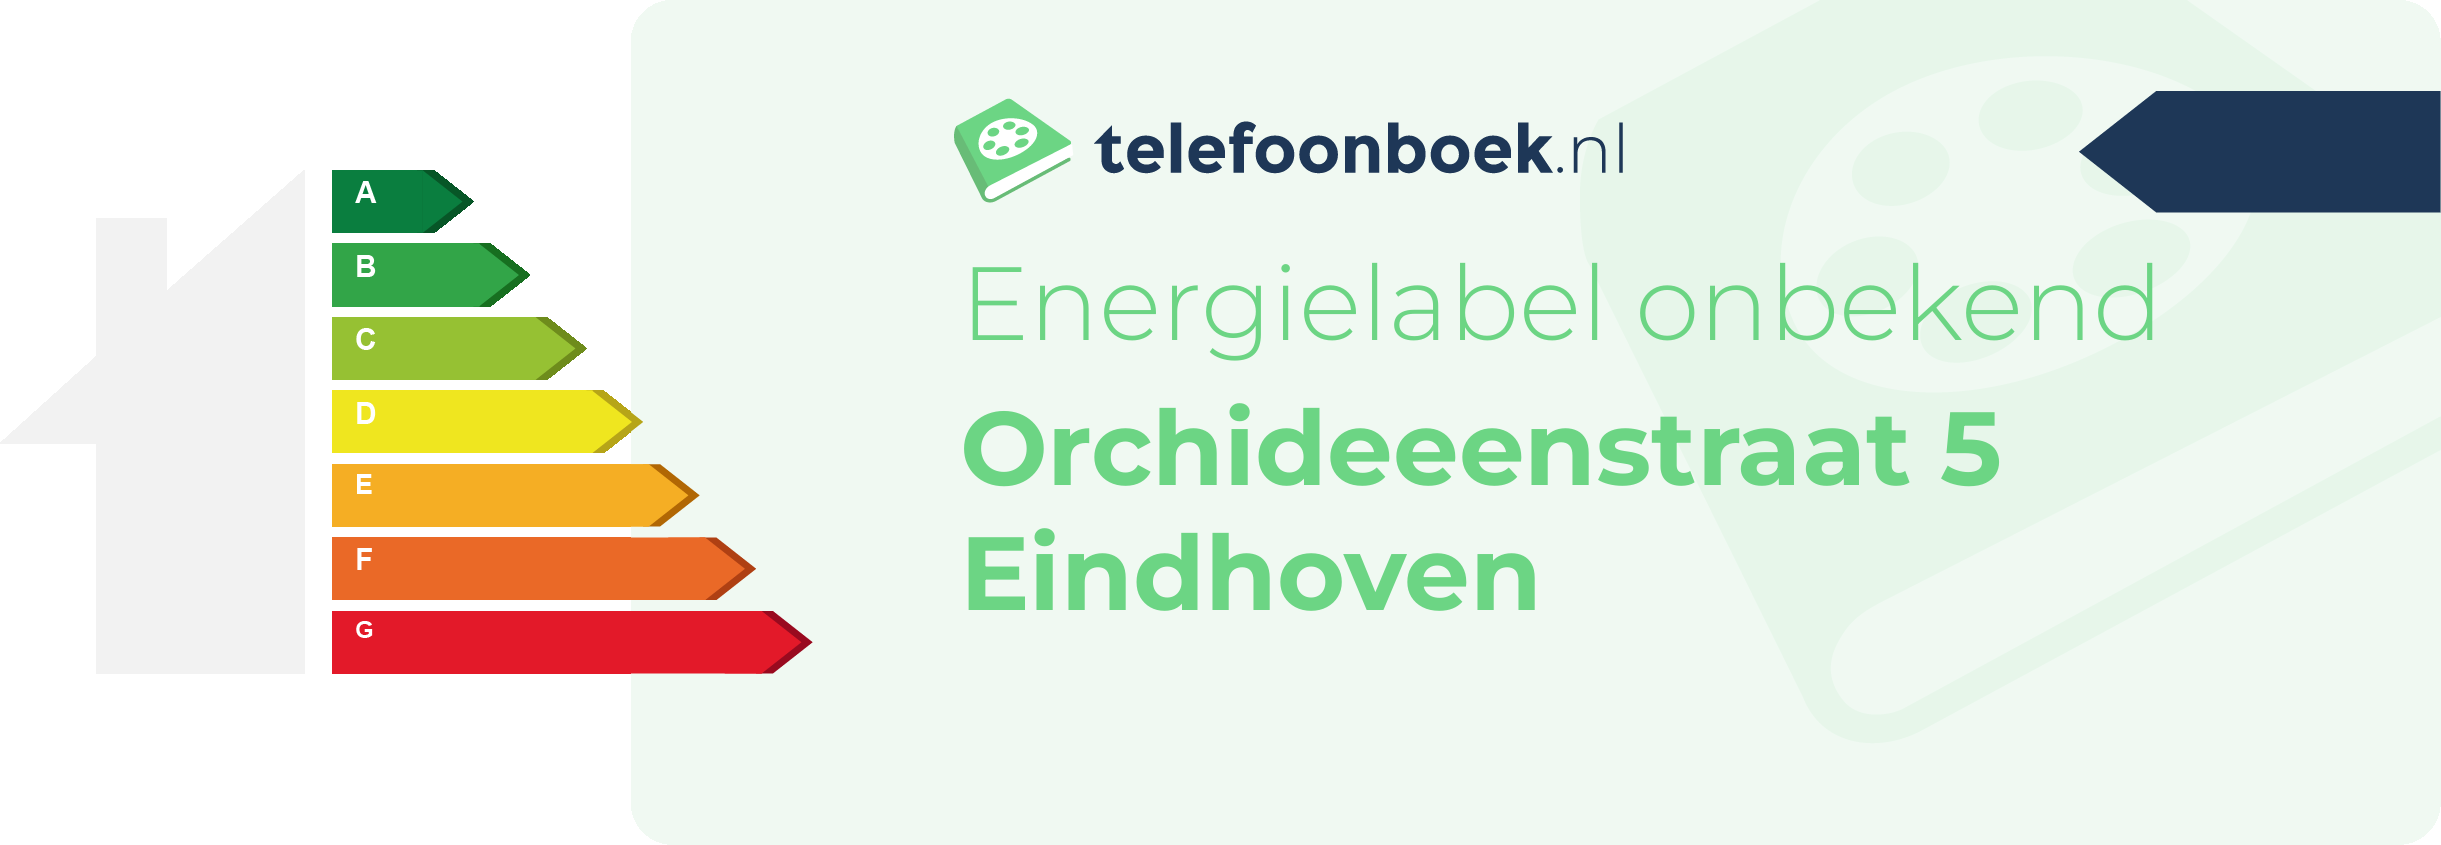 Energielabel Orchideeenstraat 5 Eindhoven